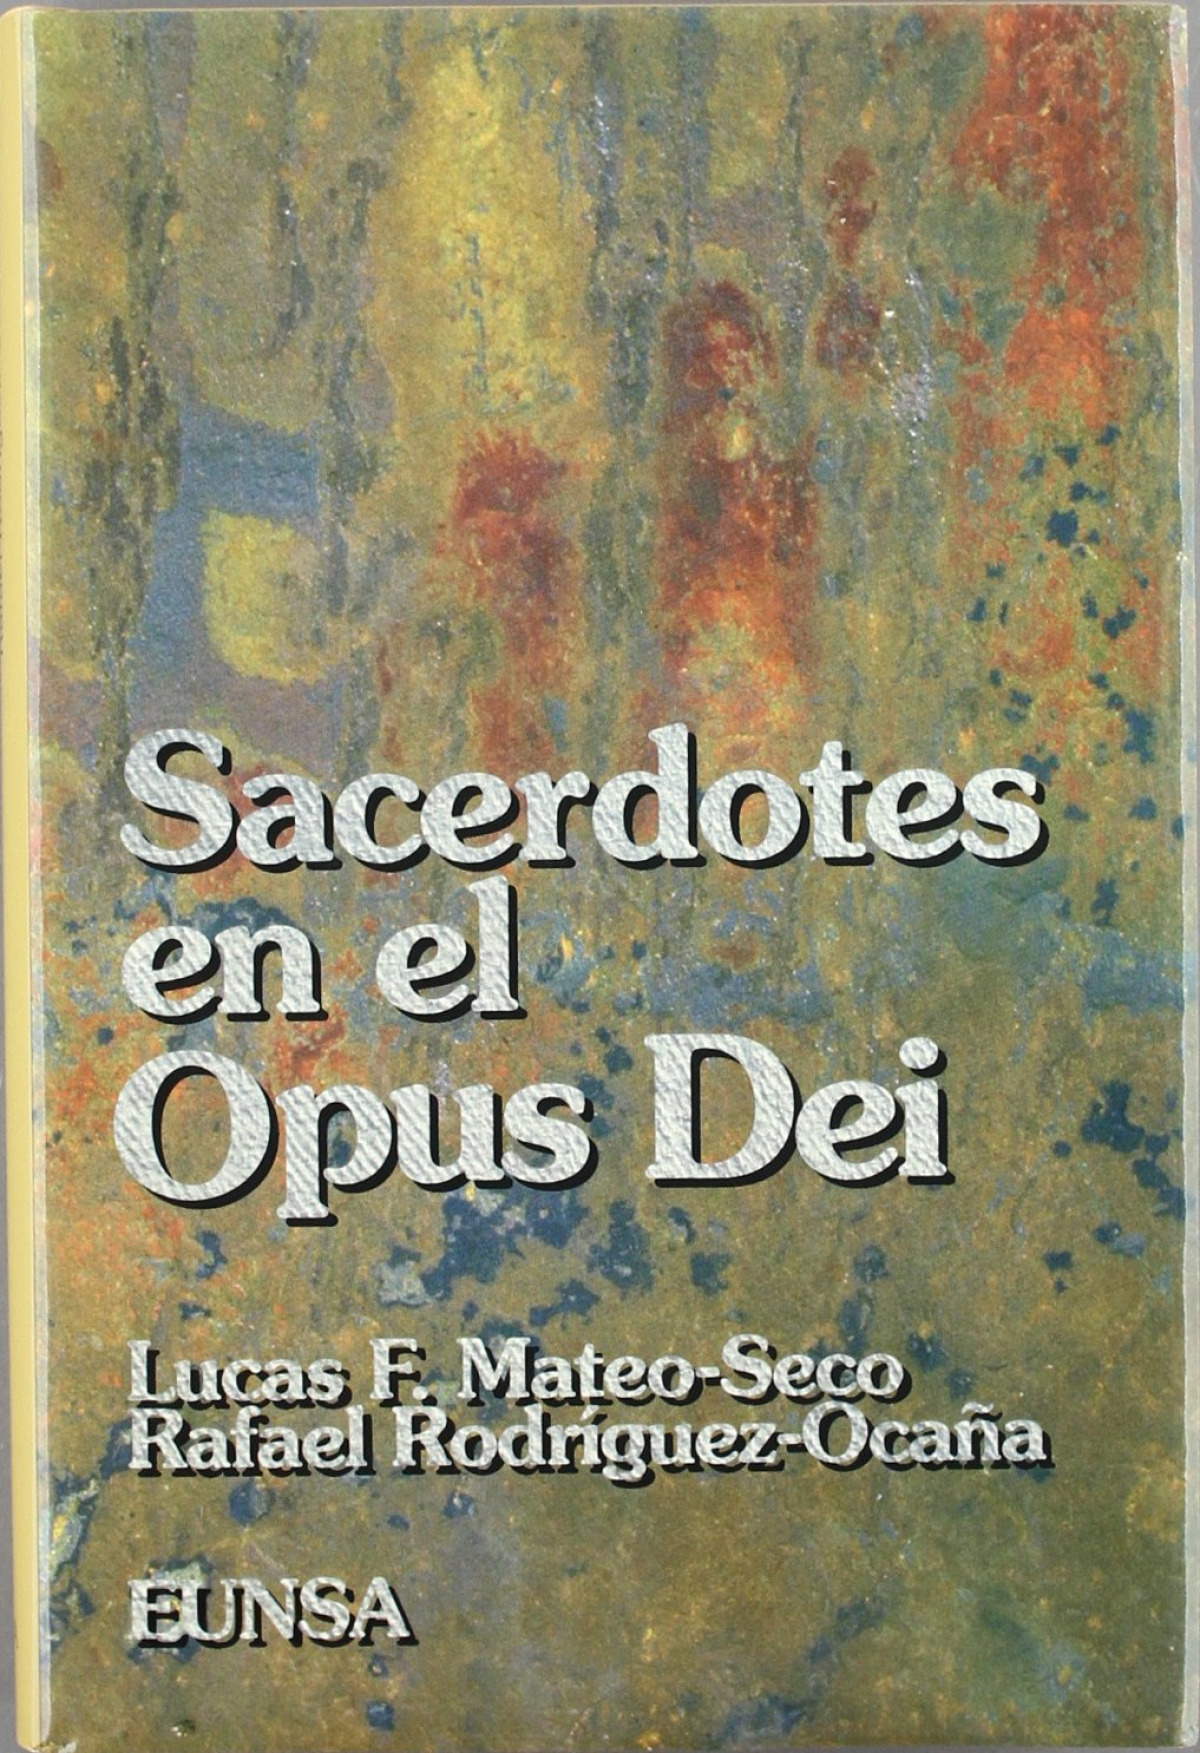 Sacerdotes en el Opus Dei secularidad, vocación y ministerio - Mateo-Seco, Lucas Francisco / Rodríguez-Ocaña, Rafael